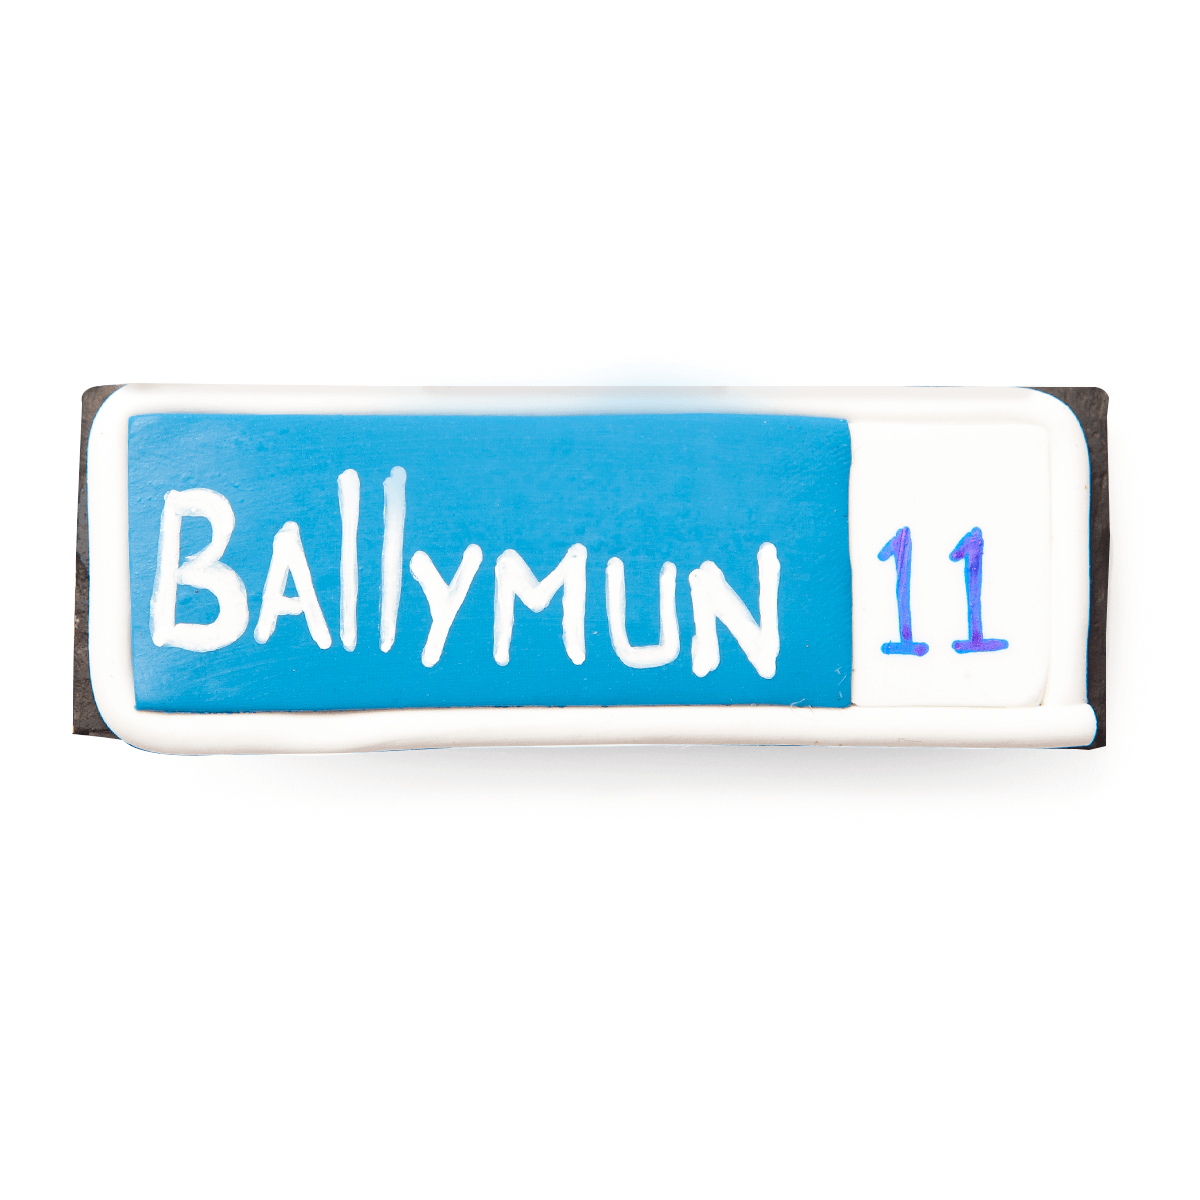 Ballymun street sign fridge magnet - Dublin themed gifts